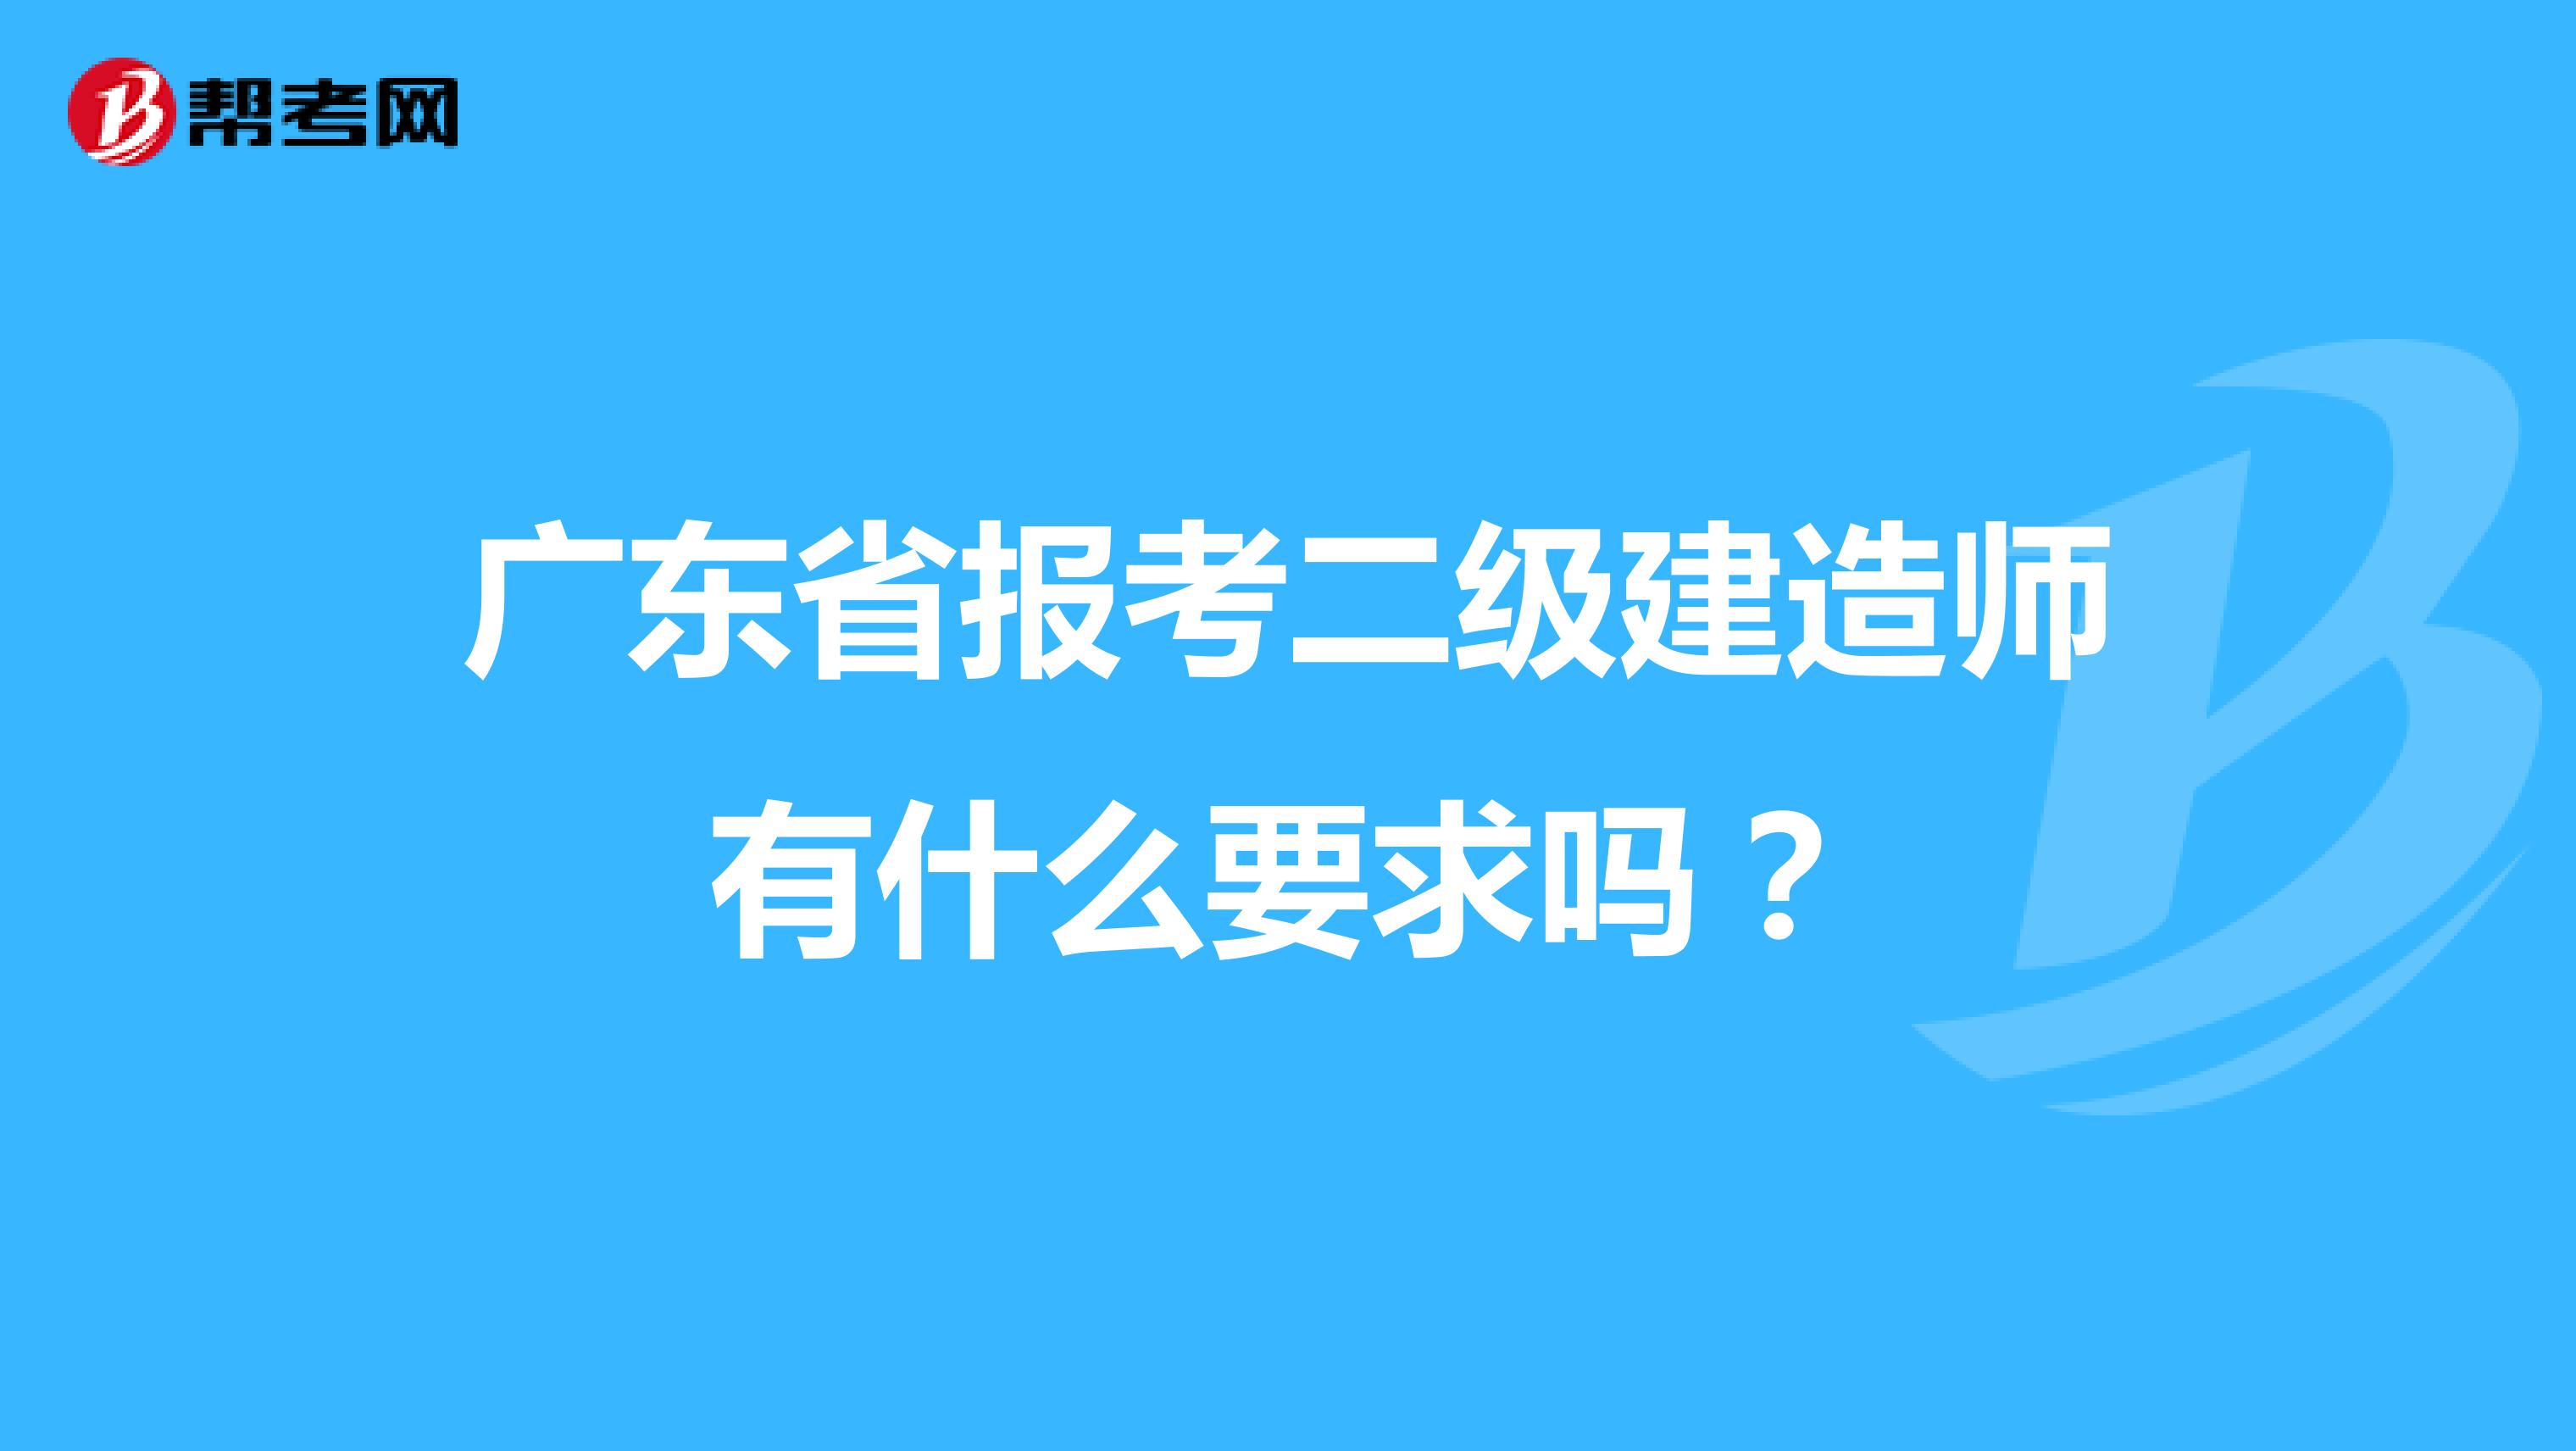 广东省报考二级建造师有什么要求吗？